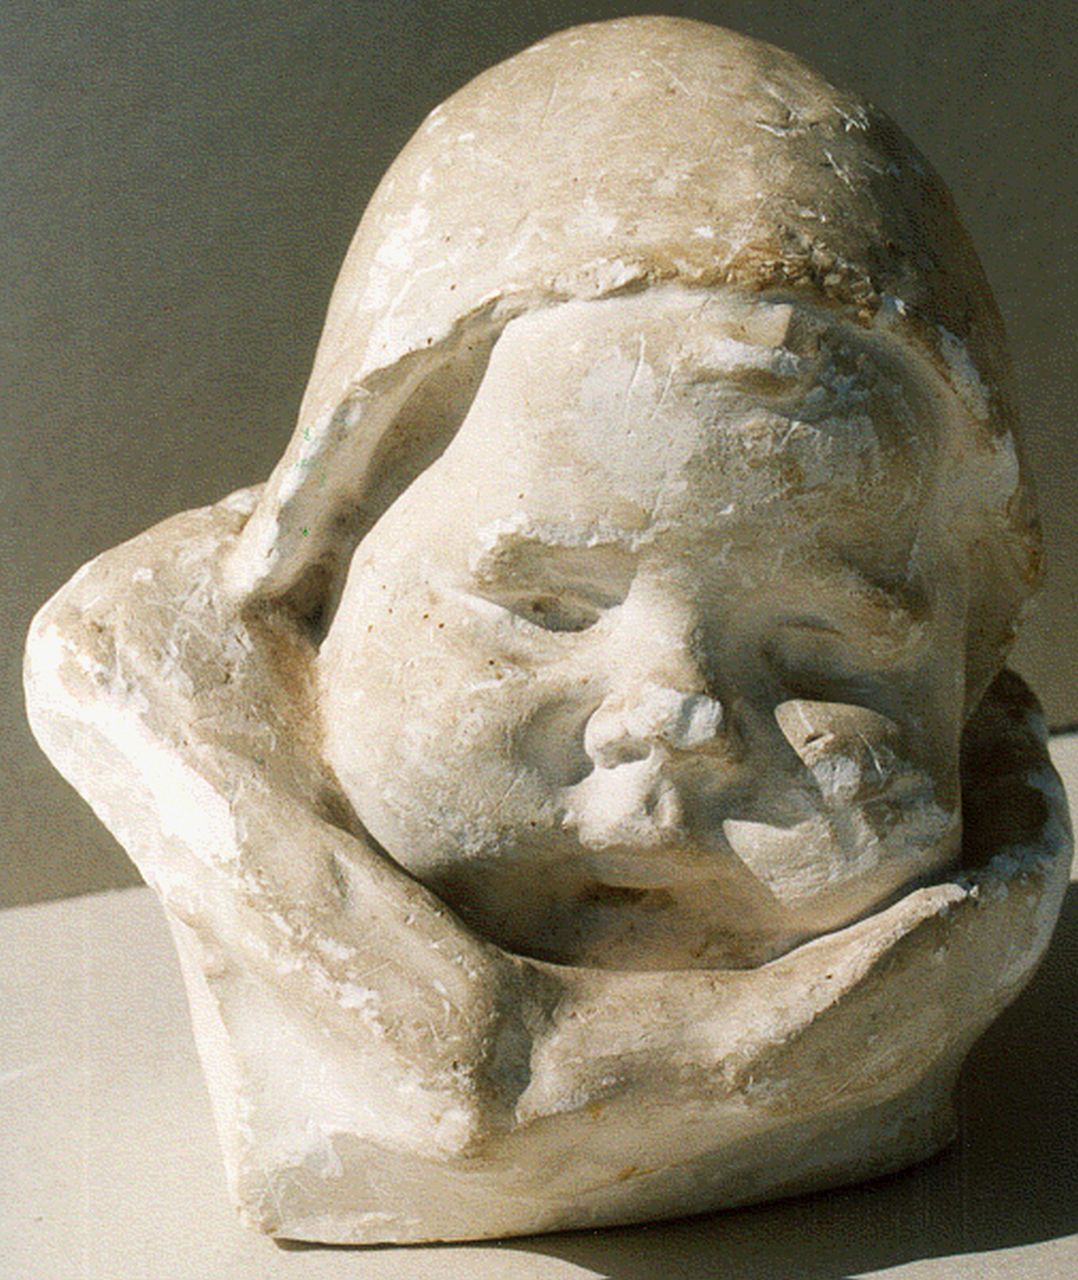 Wijk C.H.M. van | 'Charles' Henri Marie van Wijk, Babykopje met mutsje, plaster 15.0 cm, gesigneerd niet